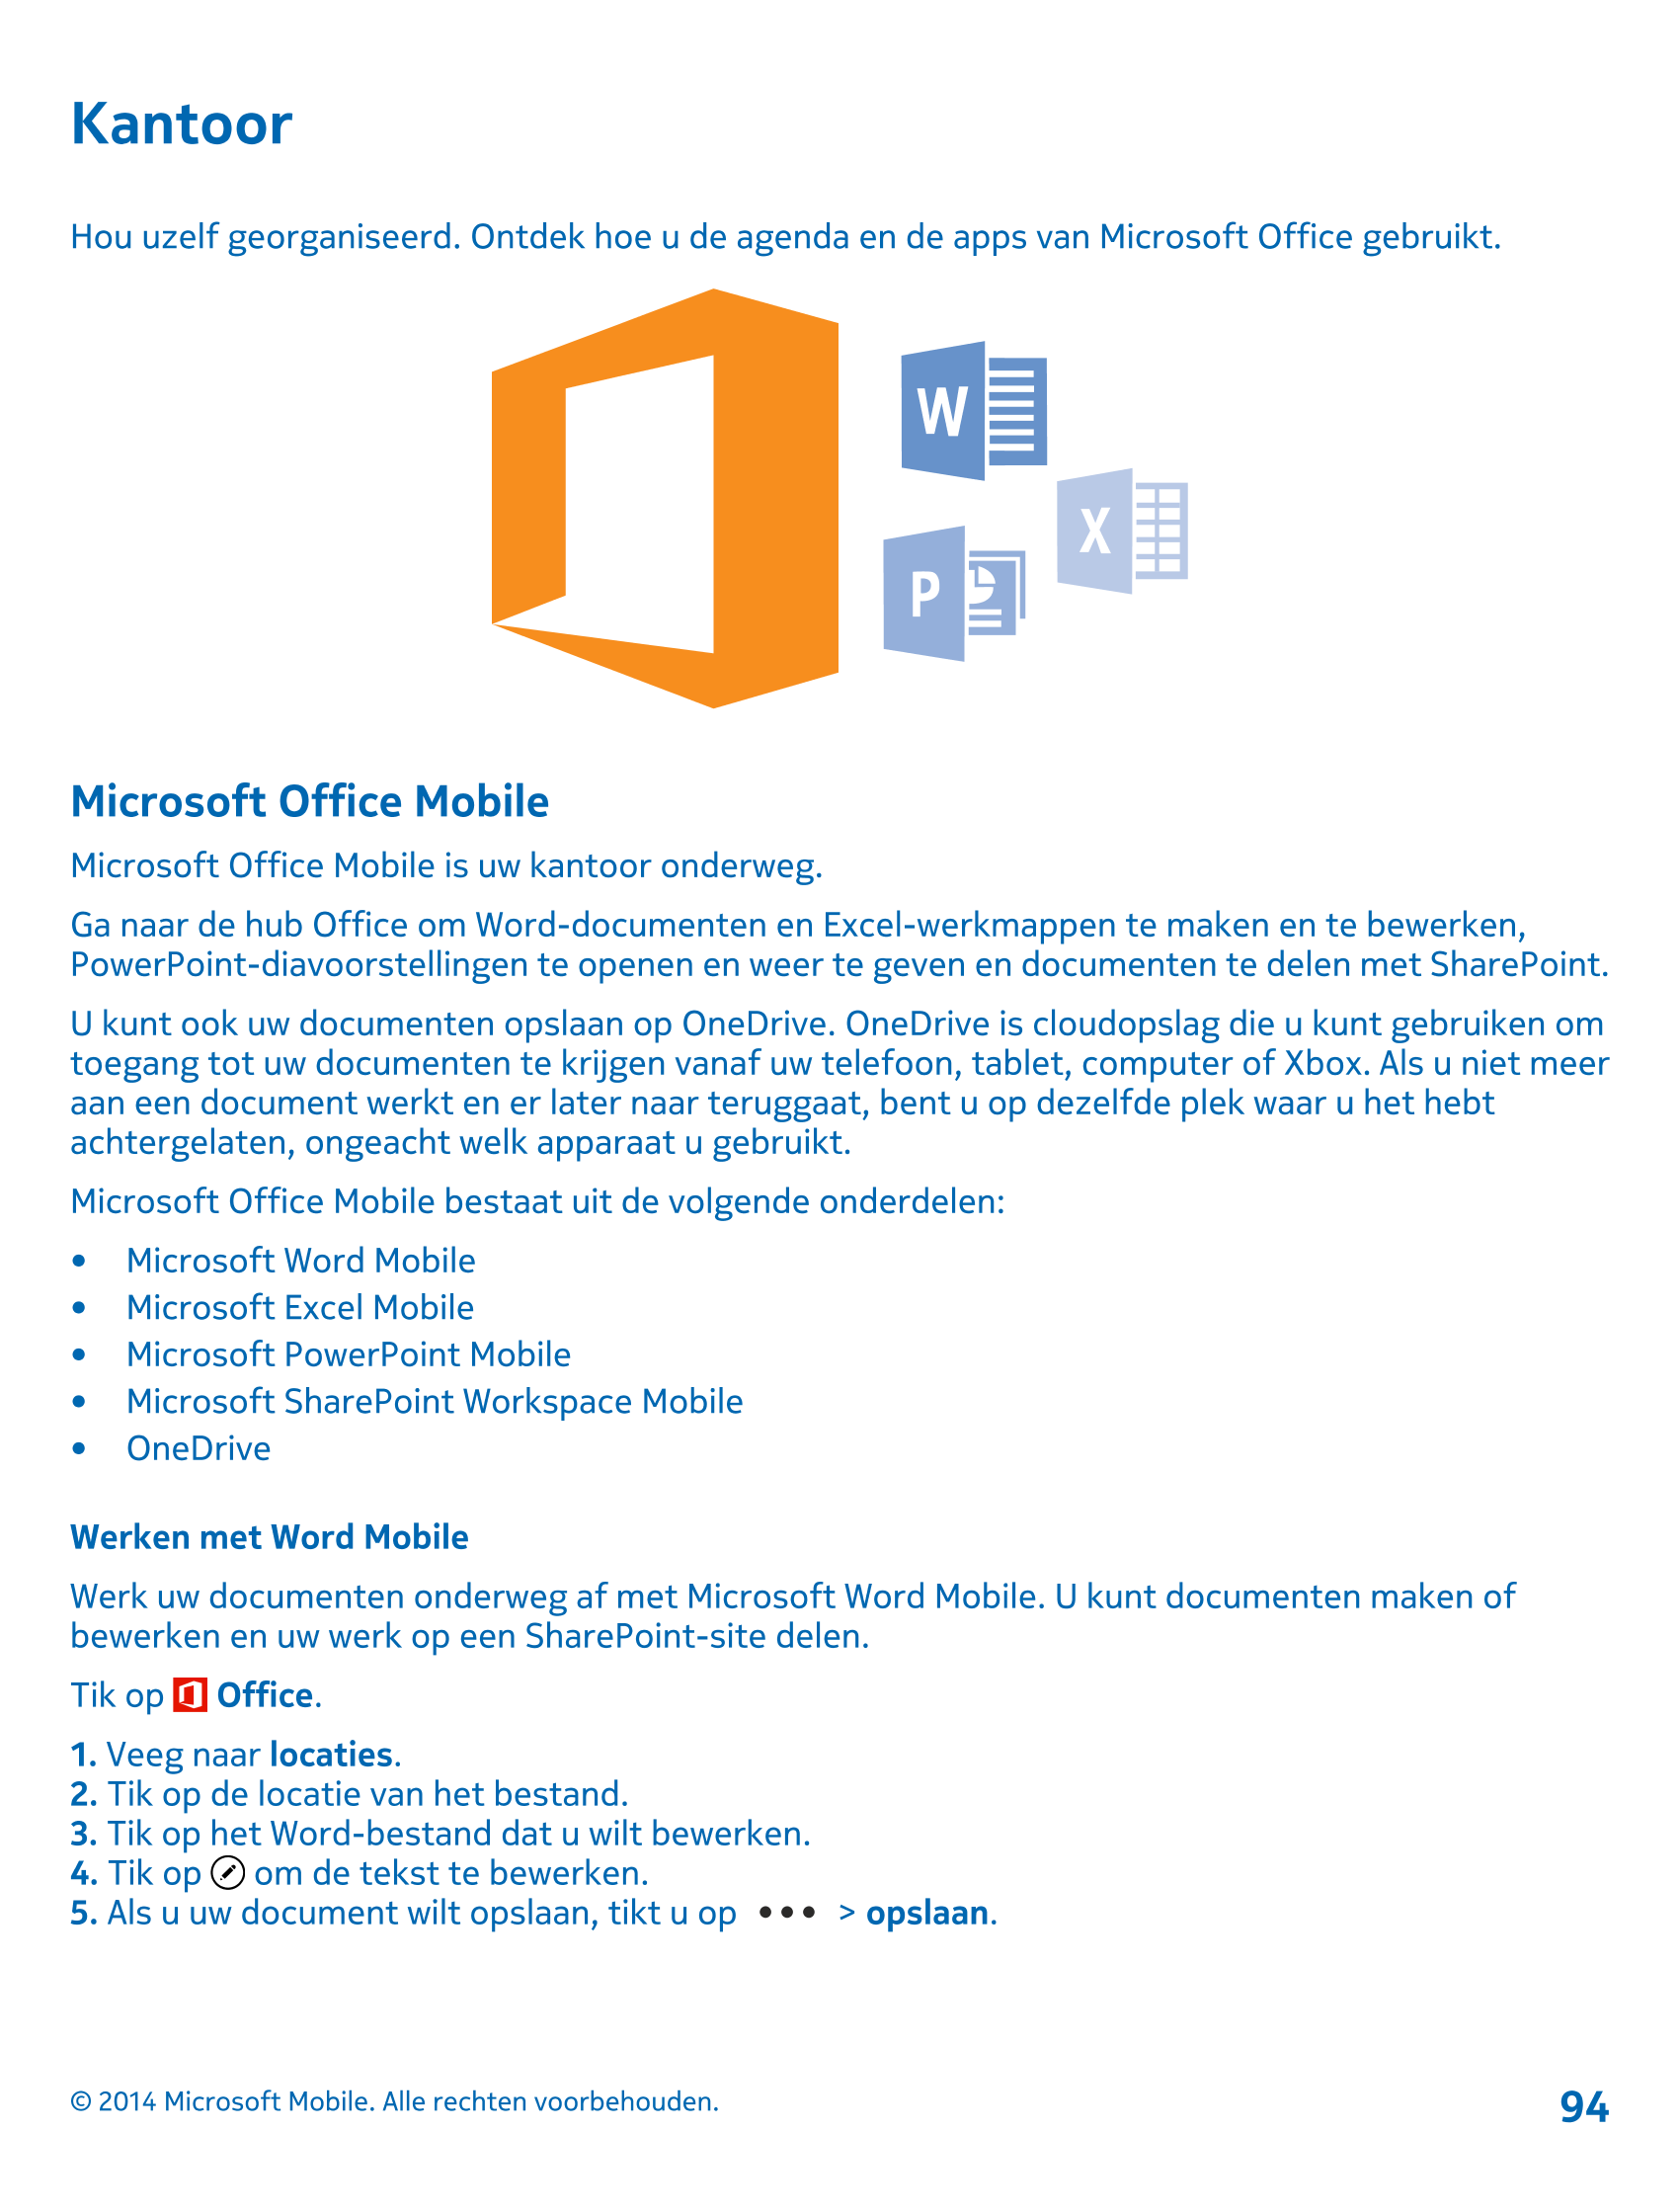 Kantoor
Hou uzelf georganiseerd. Ontdek hoe u de agenda en de apps van Microsoft Office gebruikt.
Microsoft Office Mobile
Micros